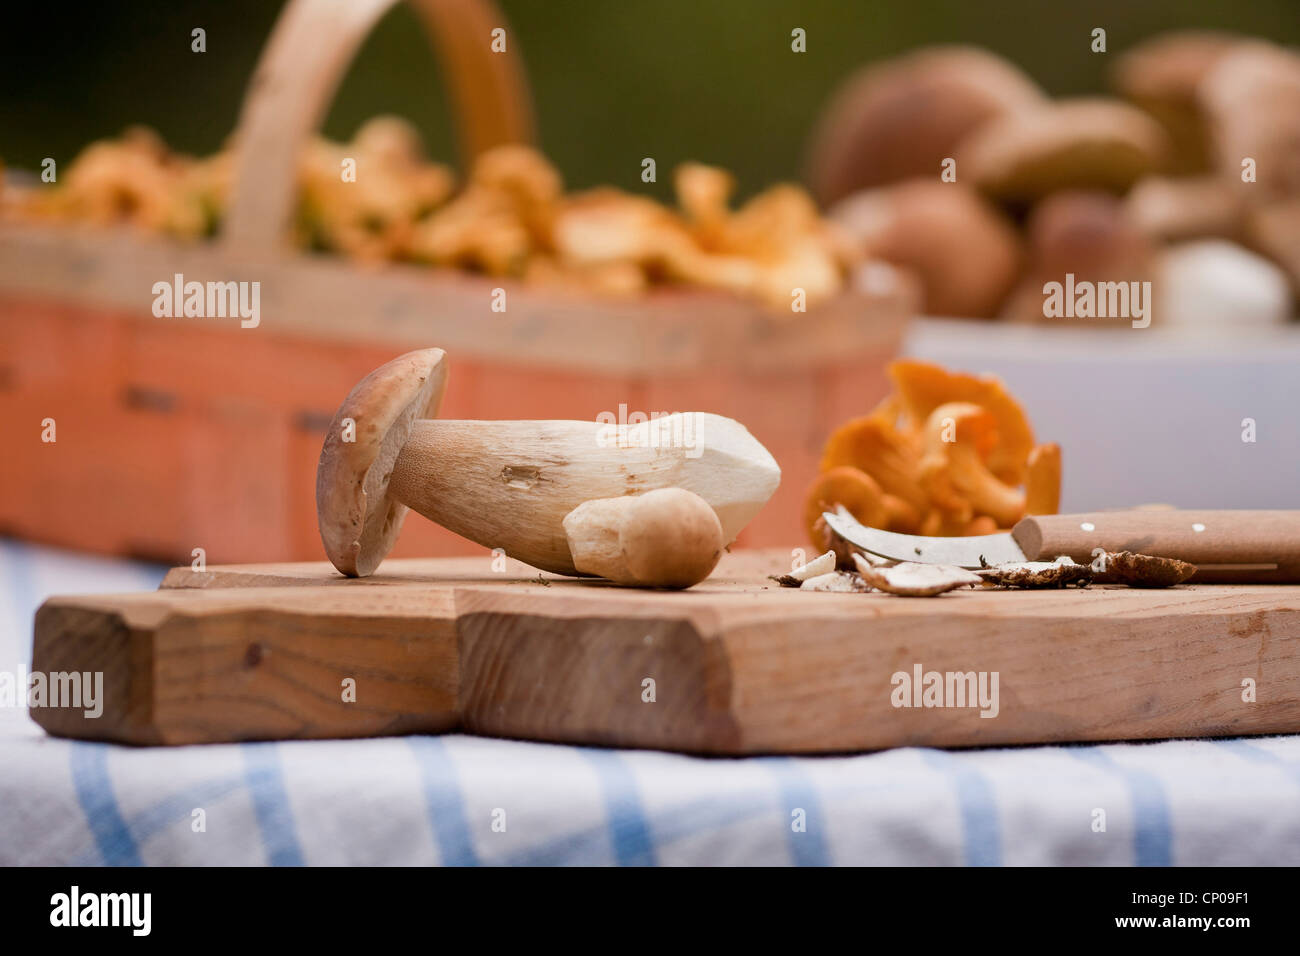 Penny bollos y cantarelos sobre una tabla de cortar, Alemania, Renania-Palatinado Foto de stock